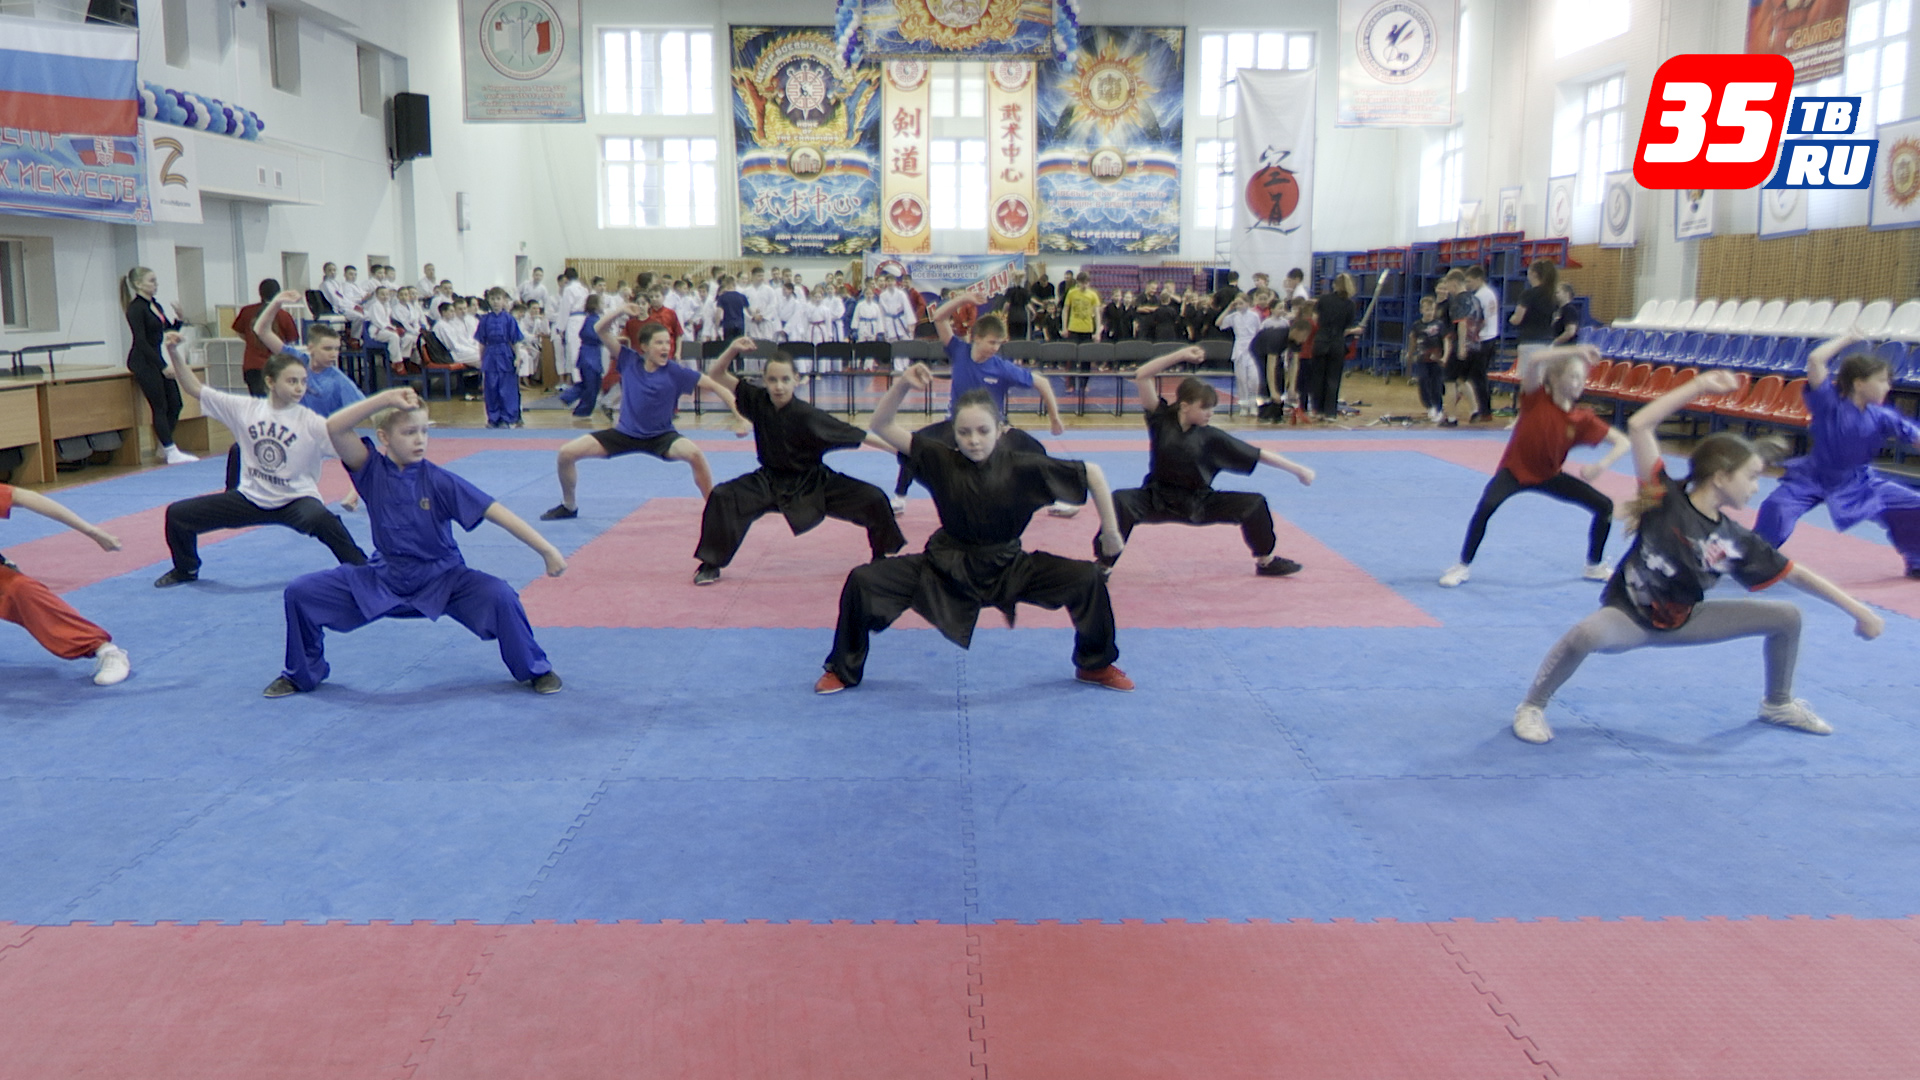 Подготовка к международному фестивалю боевых искусств проходит в Череповце